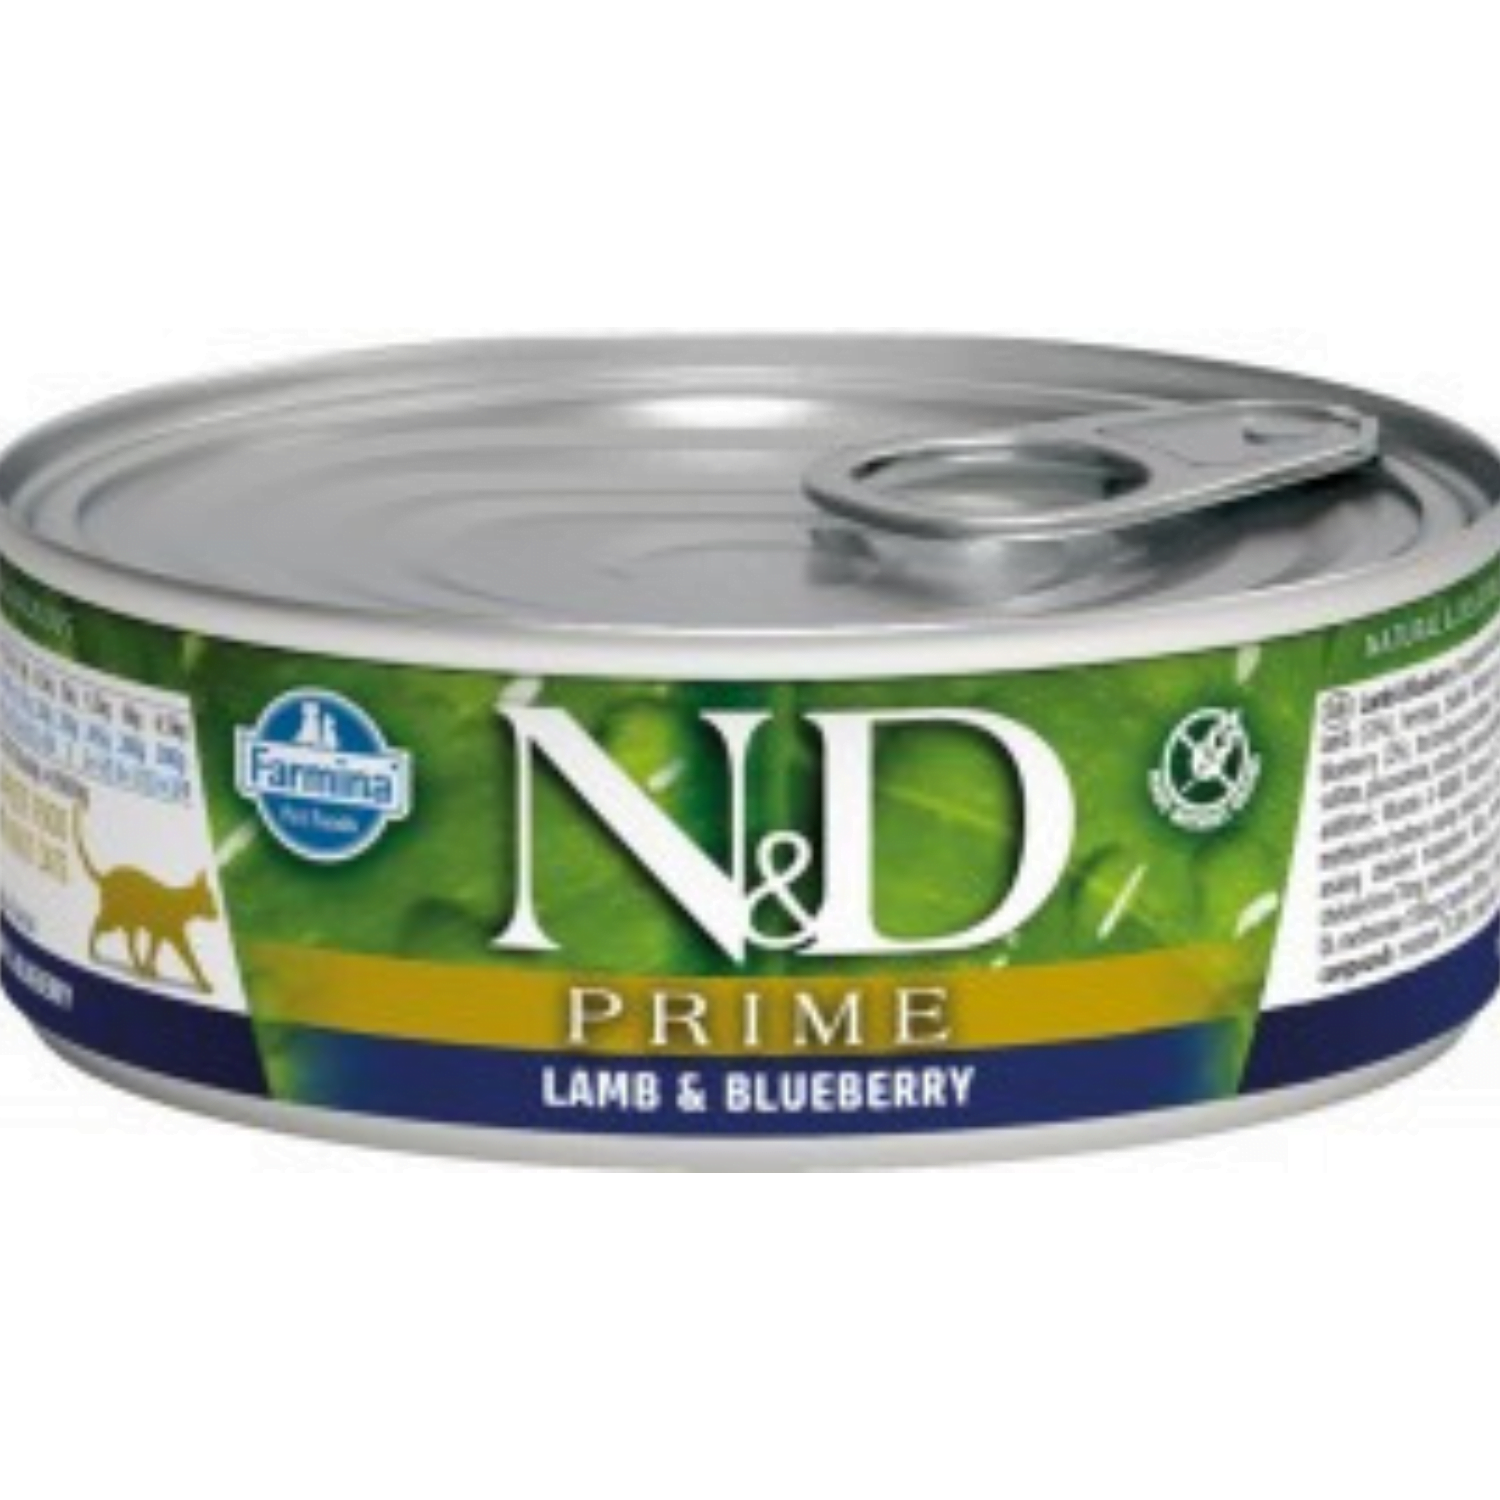 Farmina N&D Cat Prime Lamb & Blueberry 80g